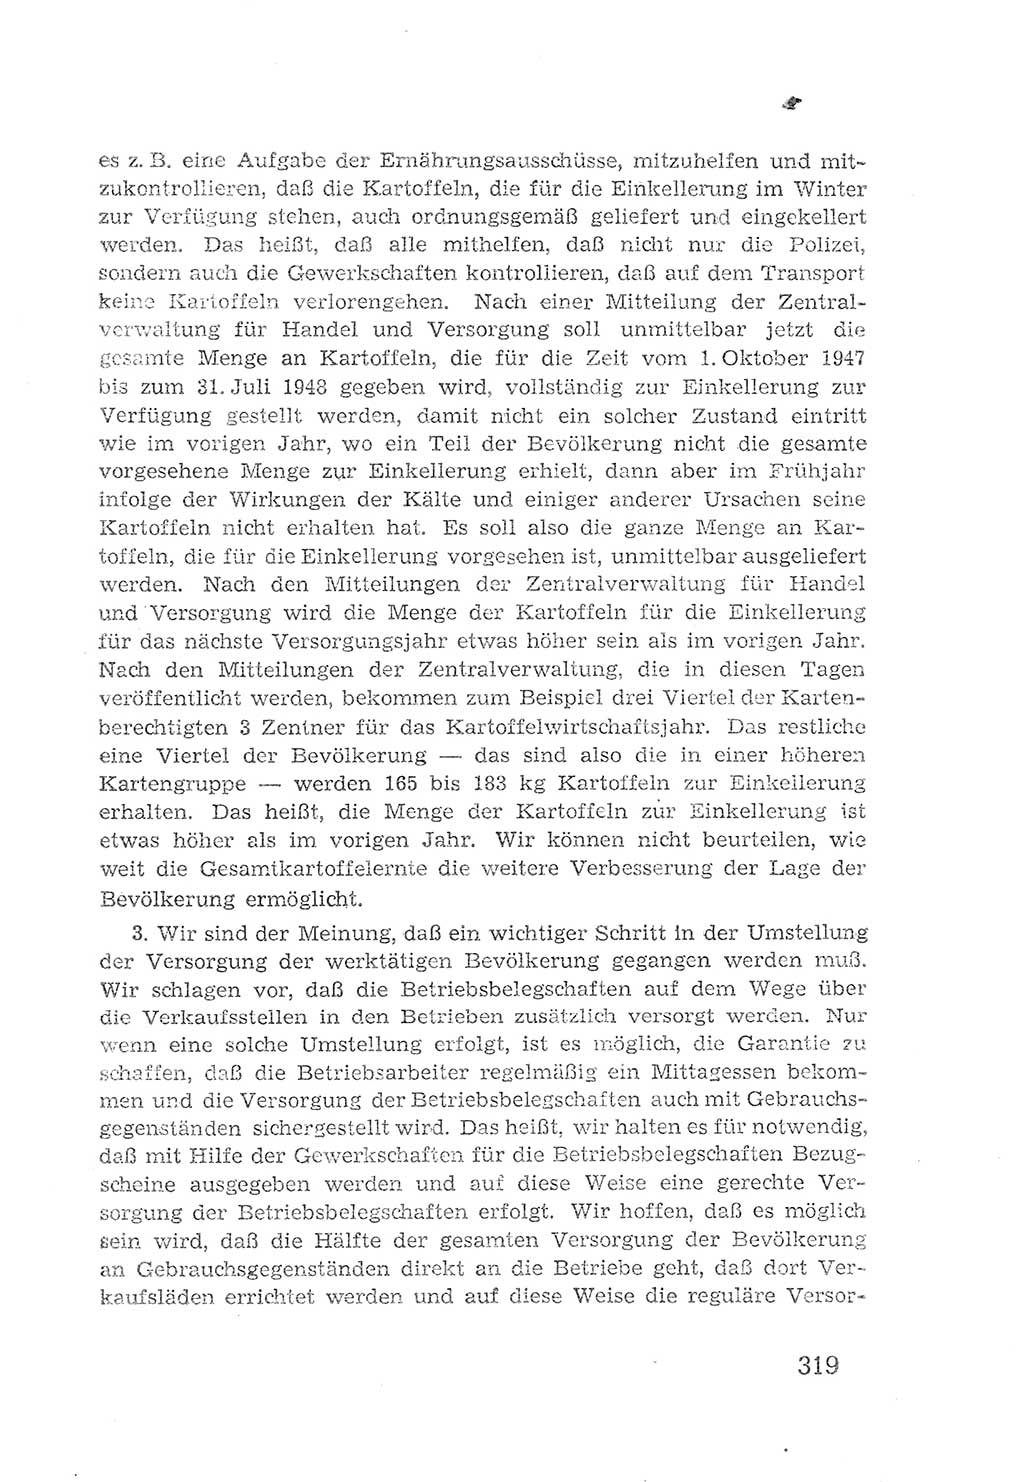 Protokoll der Verhandlungen des 2. Parteitages der Sozialistischen Einheitspartei Deutschlands (SED) [Sowjetische Besatzungszone (SBZ) Deutschlands] 1947, Seite 319 (Prot. Verh. 2. PT SED SBZ Dtl. 1947, S. 319)